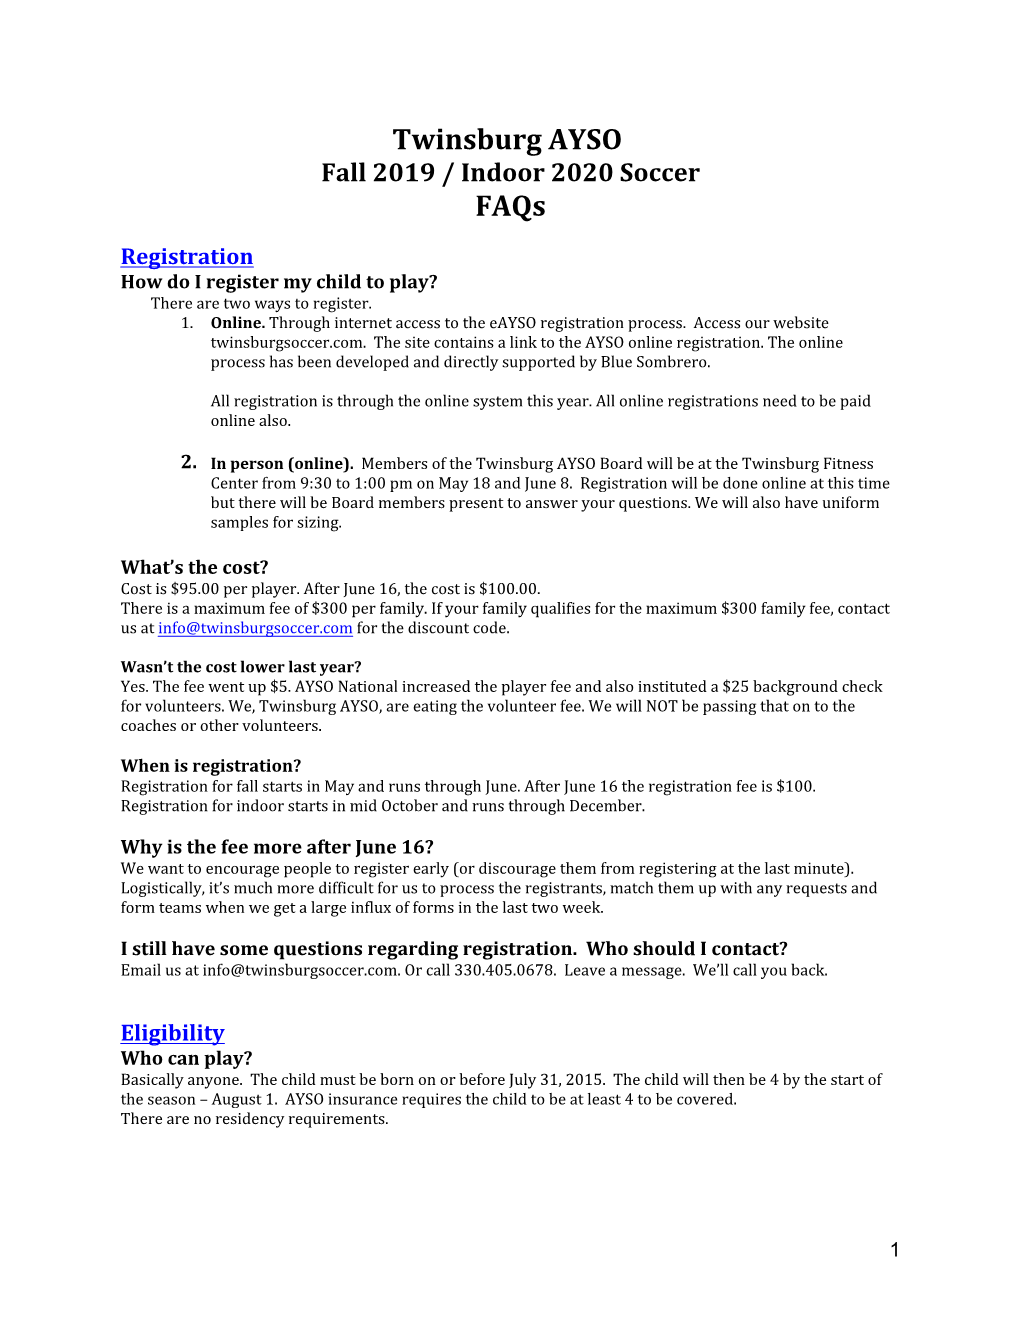 Fall 2019 / Indoor 2020 Soccer Faqs